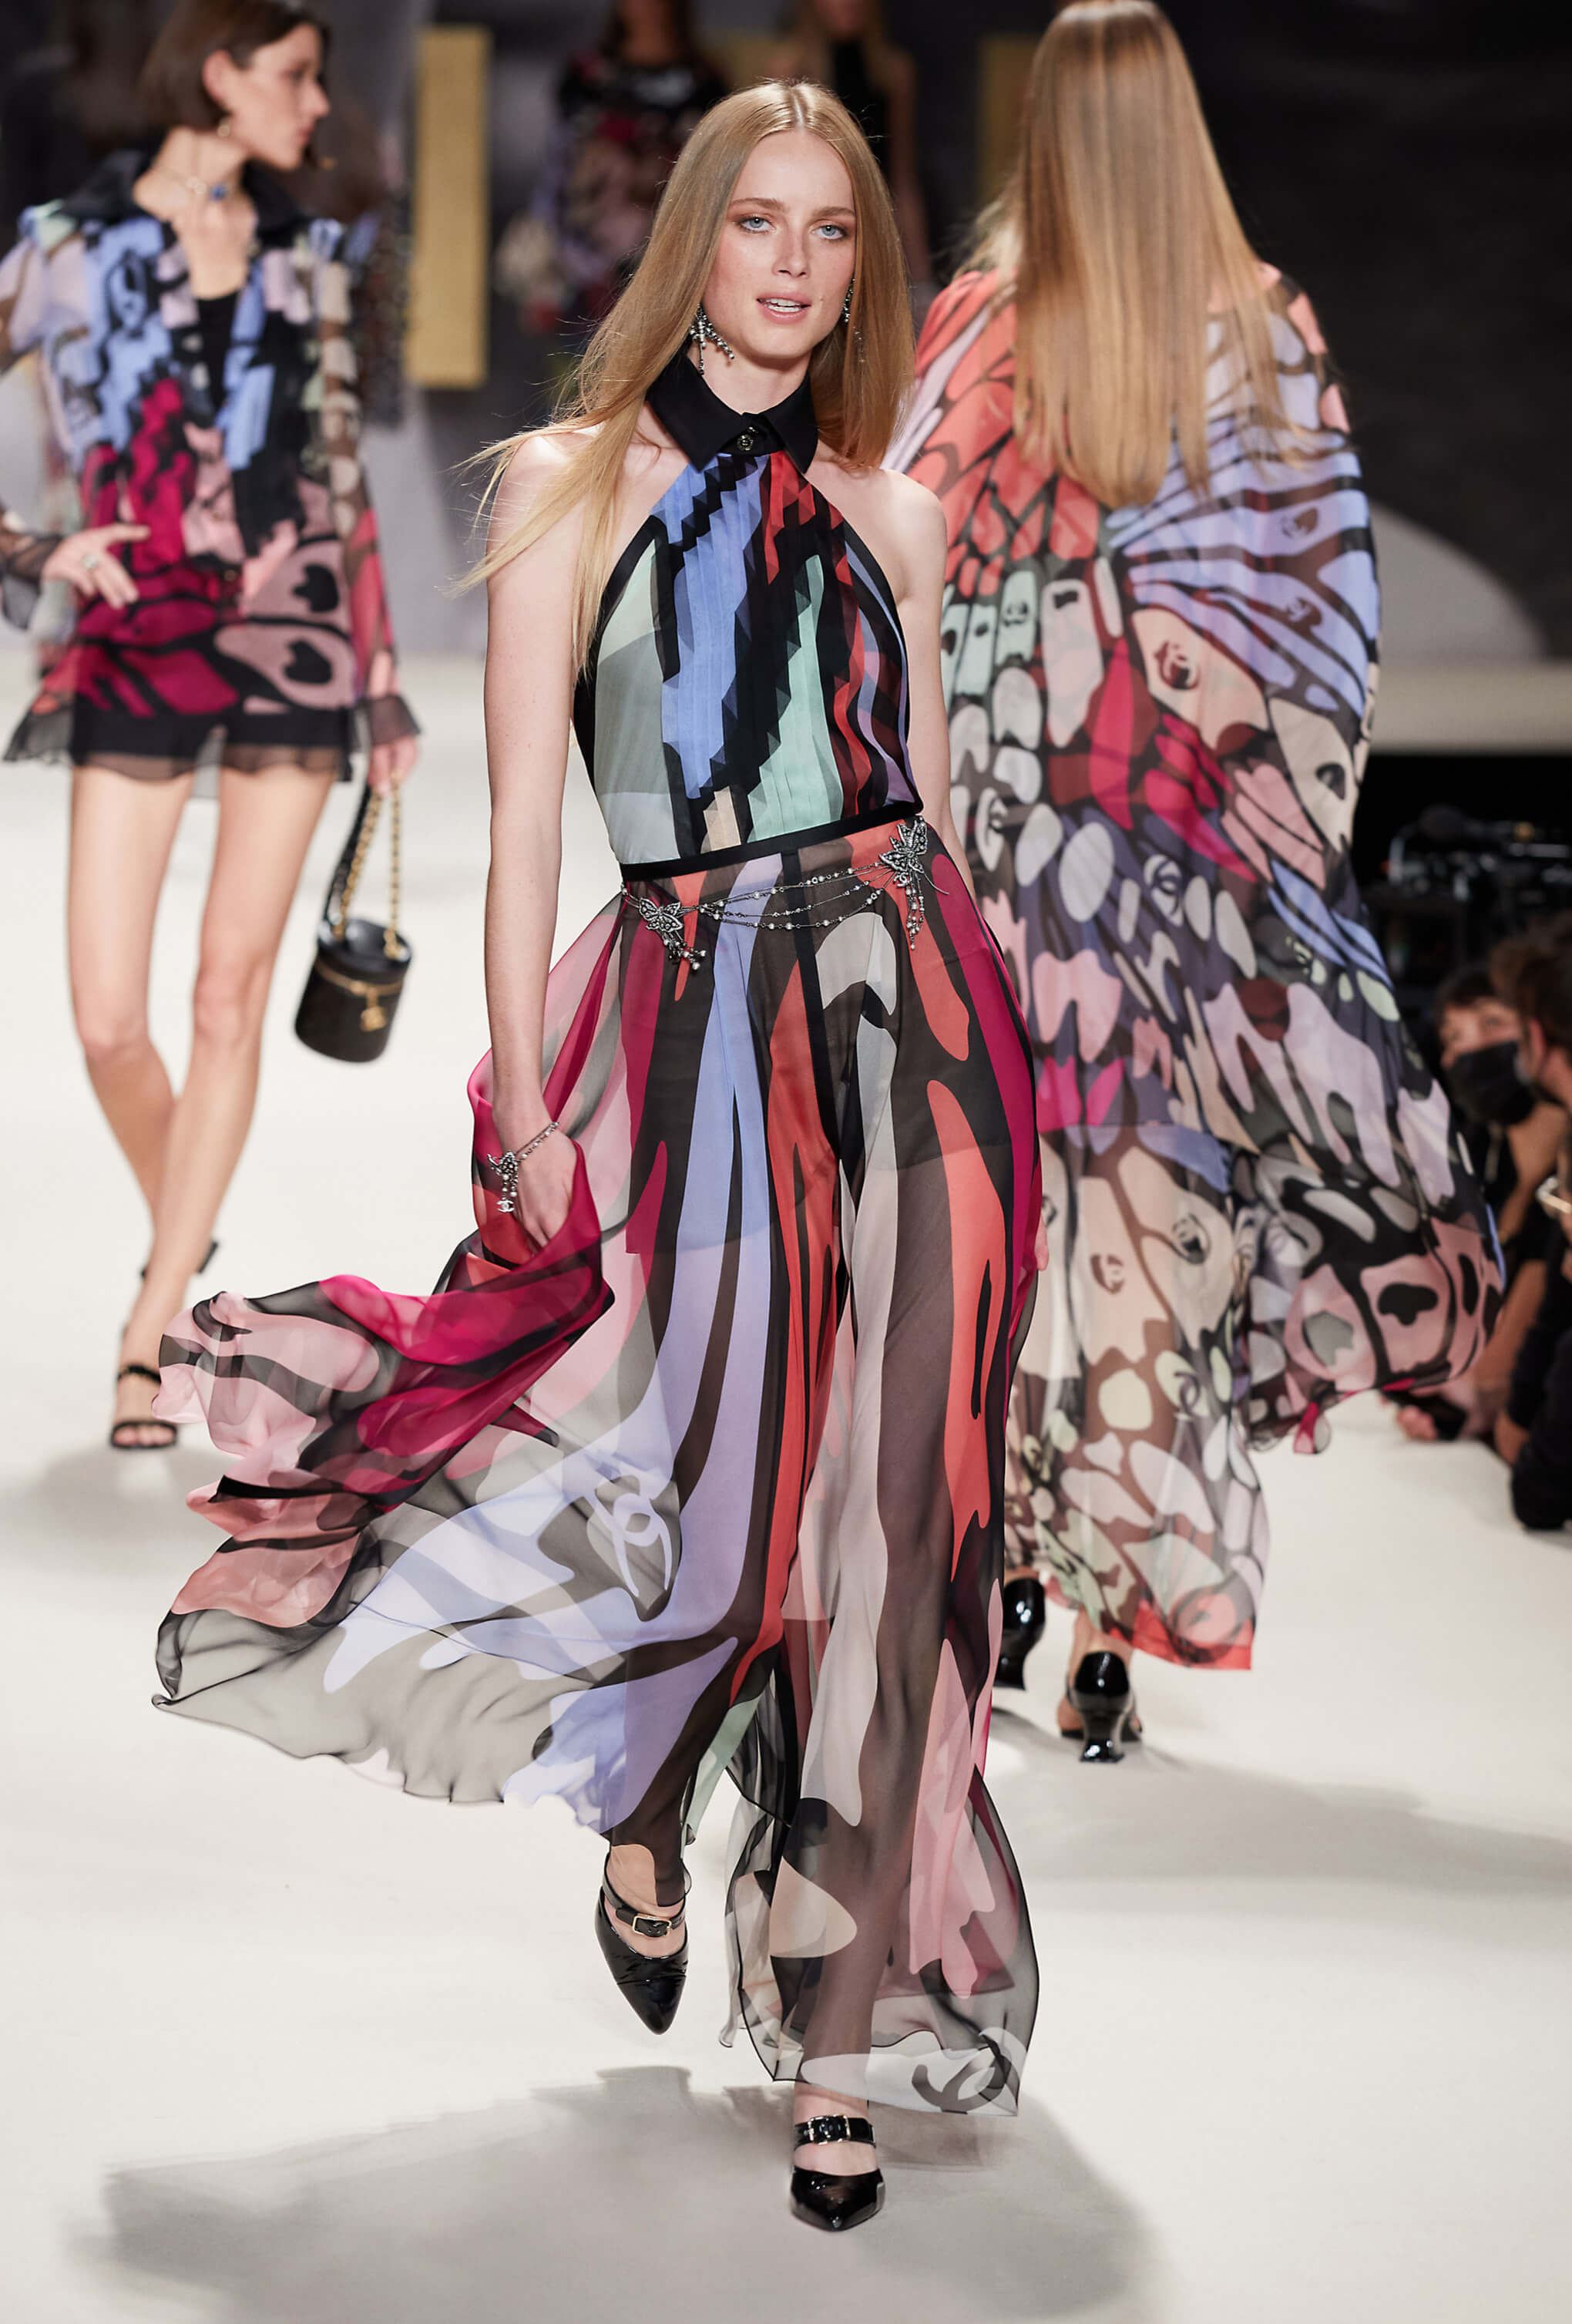 Paris Fashion Week: Chanel Spring/Summer 2022 - A&E Magazine